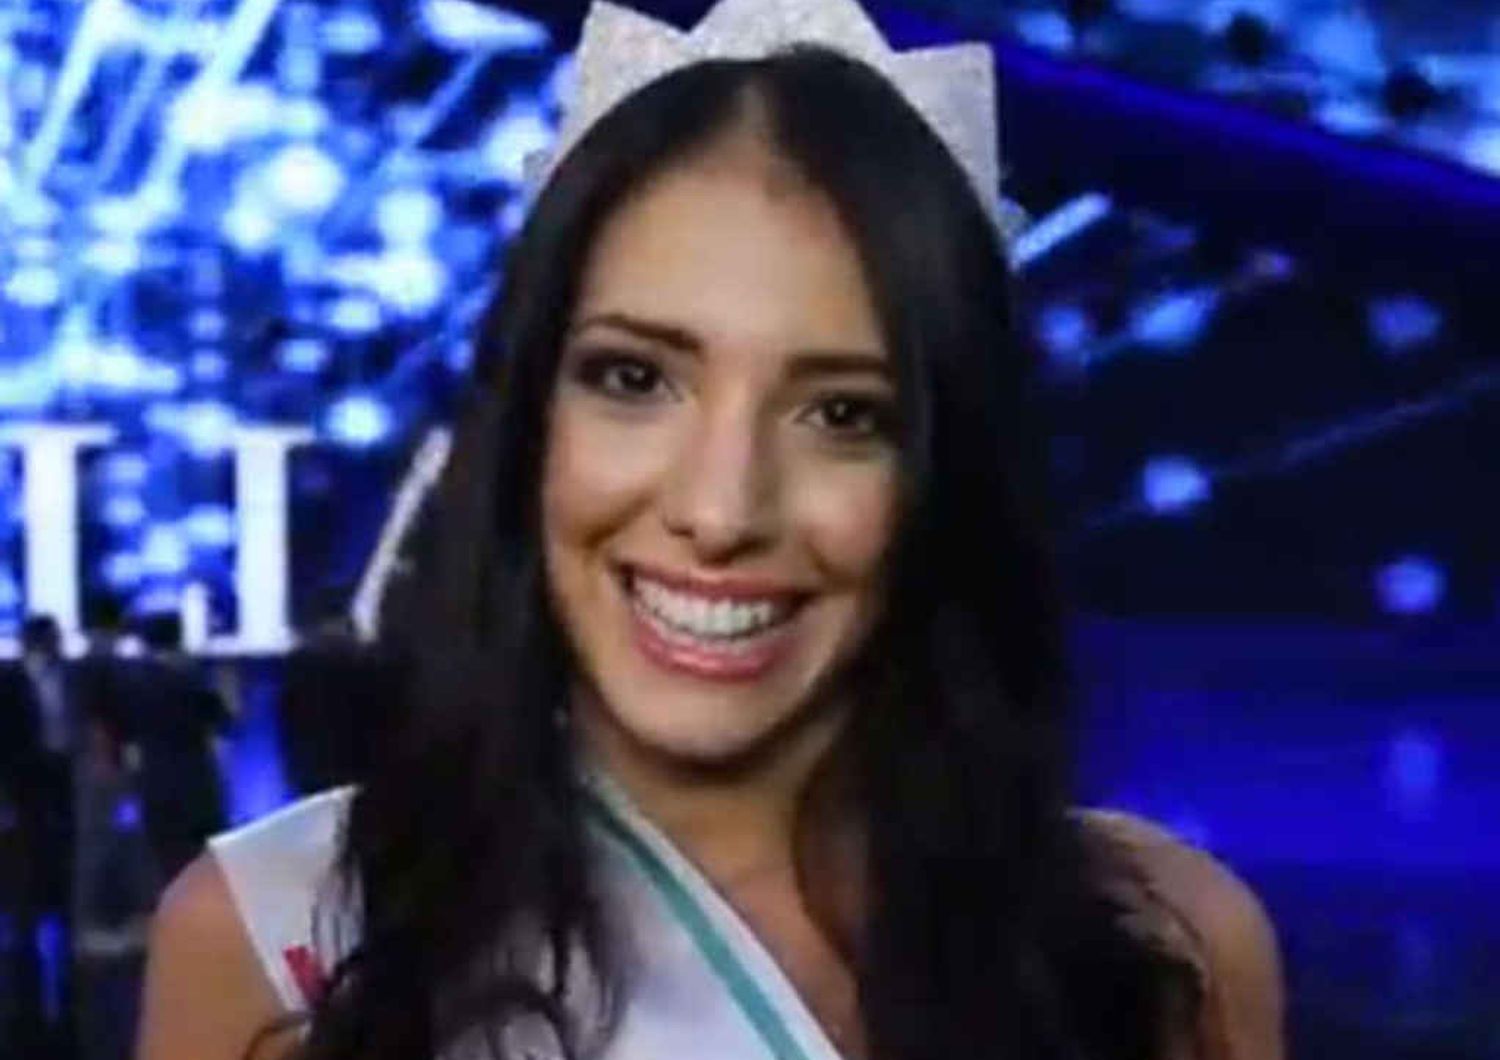 Clarissa Marchese e' Miss Italia 2014, siciliana ventenne